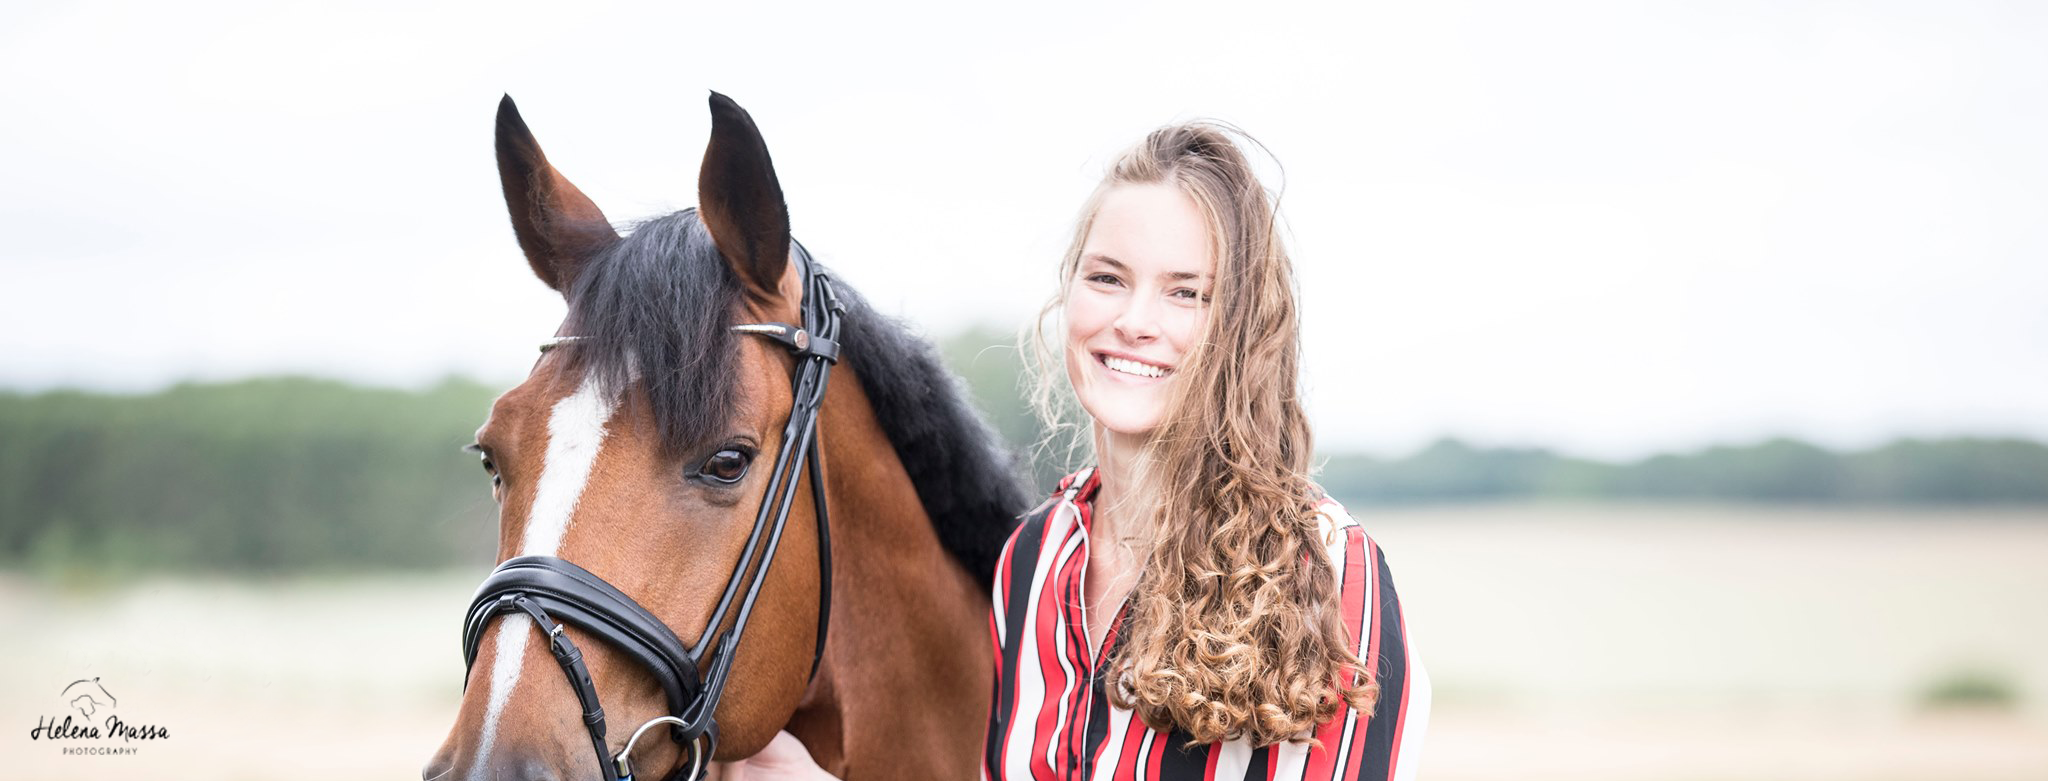 5 tips voor een geslaagde portretfoto met je paard